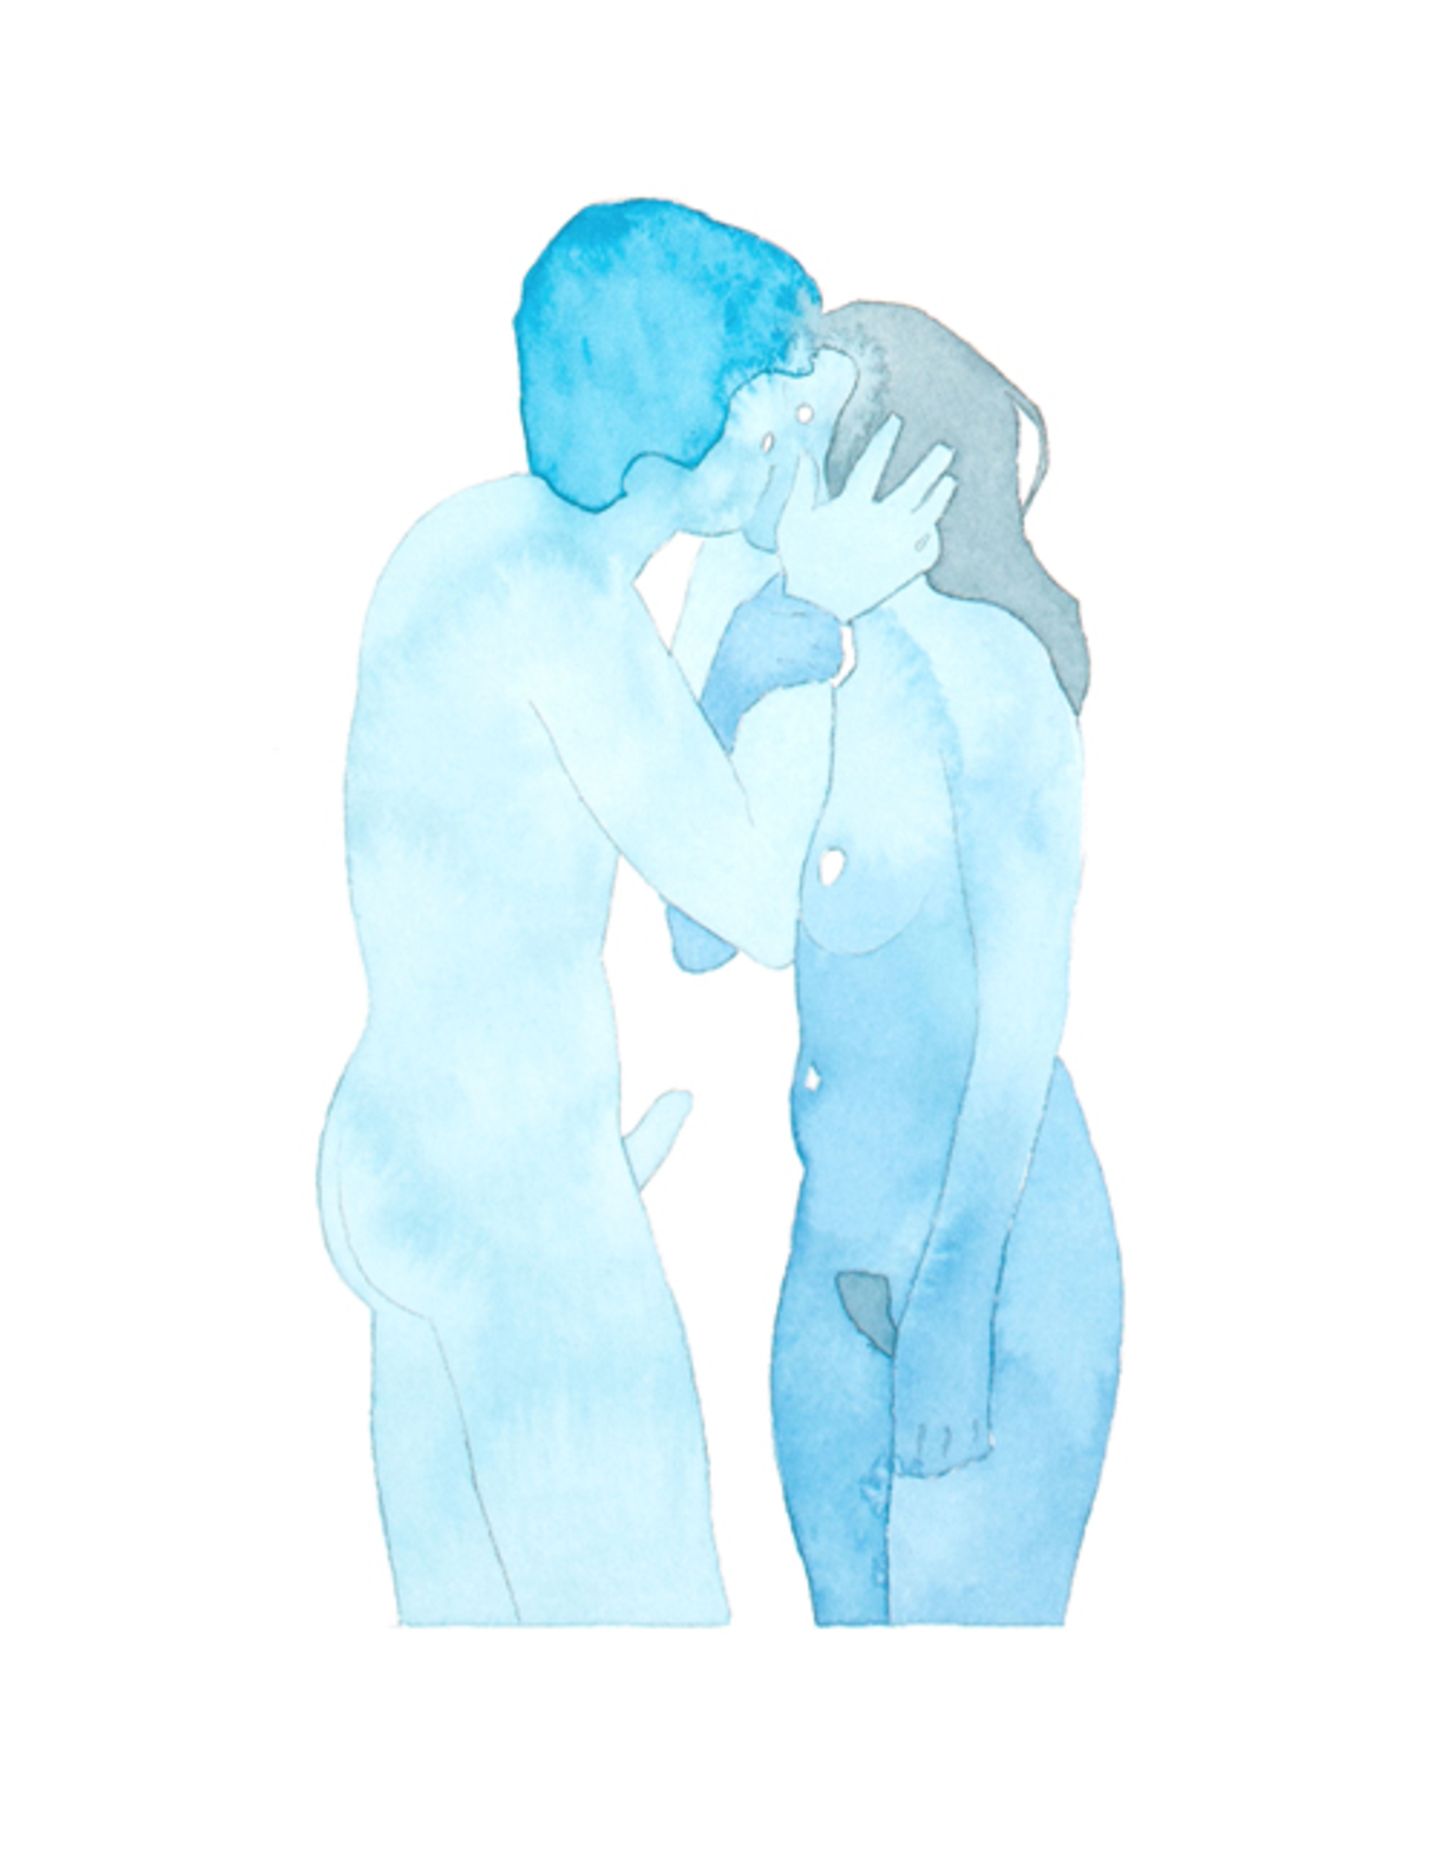 Illustrationen von Dan Gluibizzi zum NEON-Artikel über sexuelle Übergriffe auf Frauen